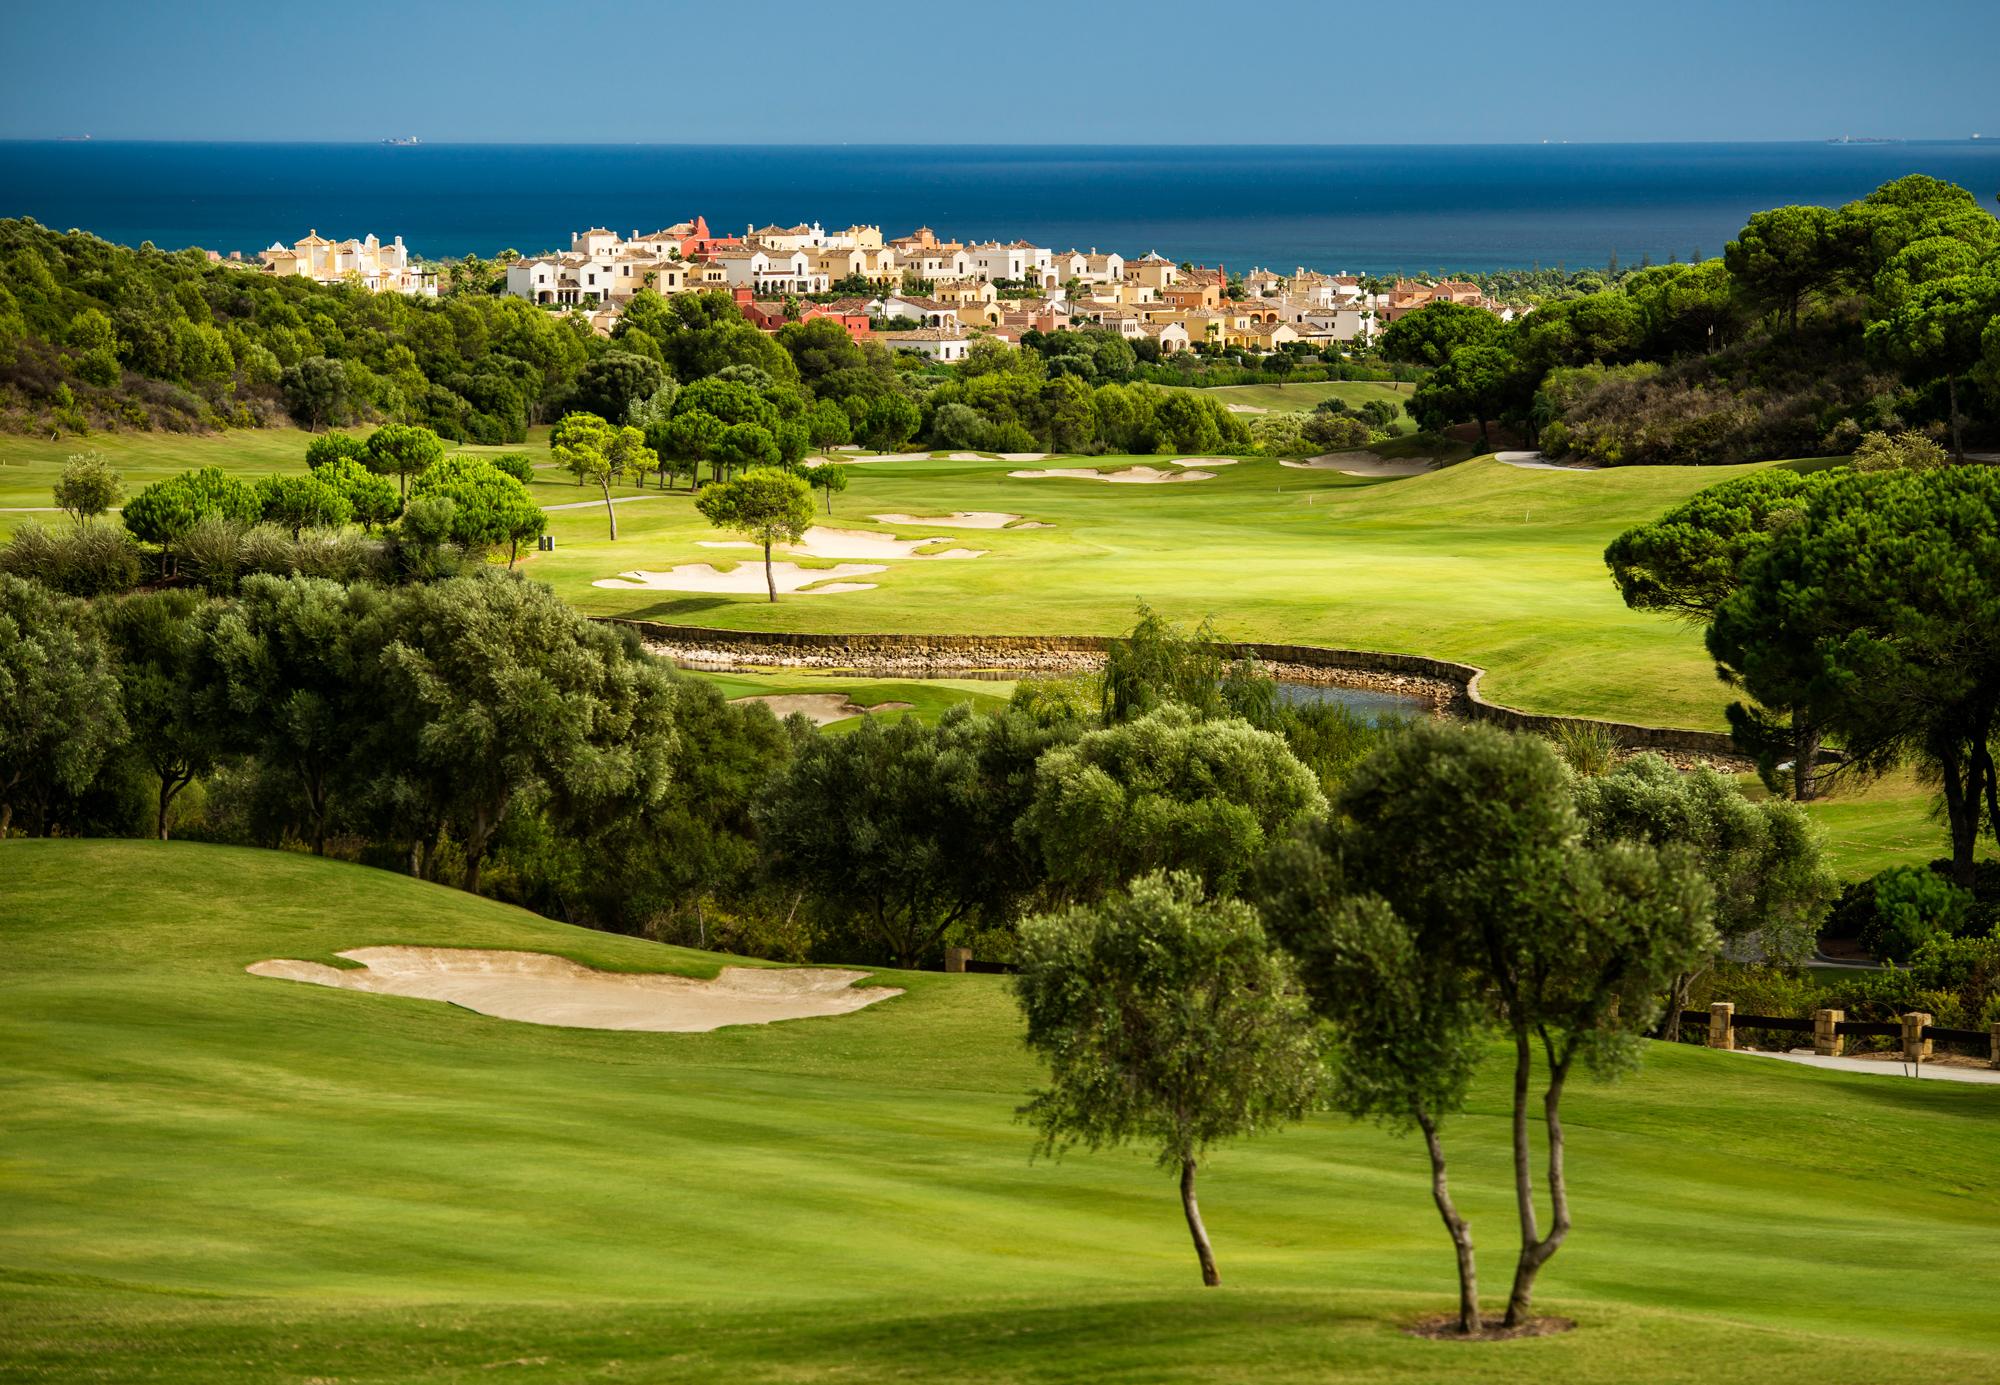 The Cabopino Golf Marbella's impressive golf course situated in fantastic Costa Del Sol.